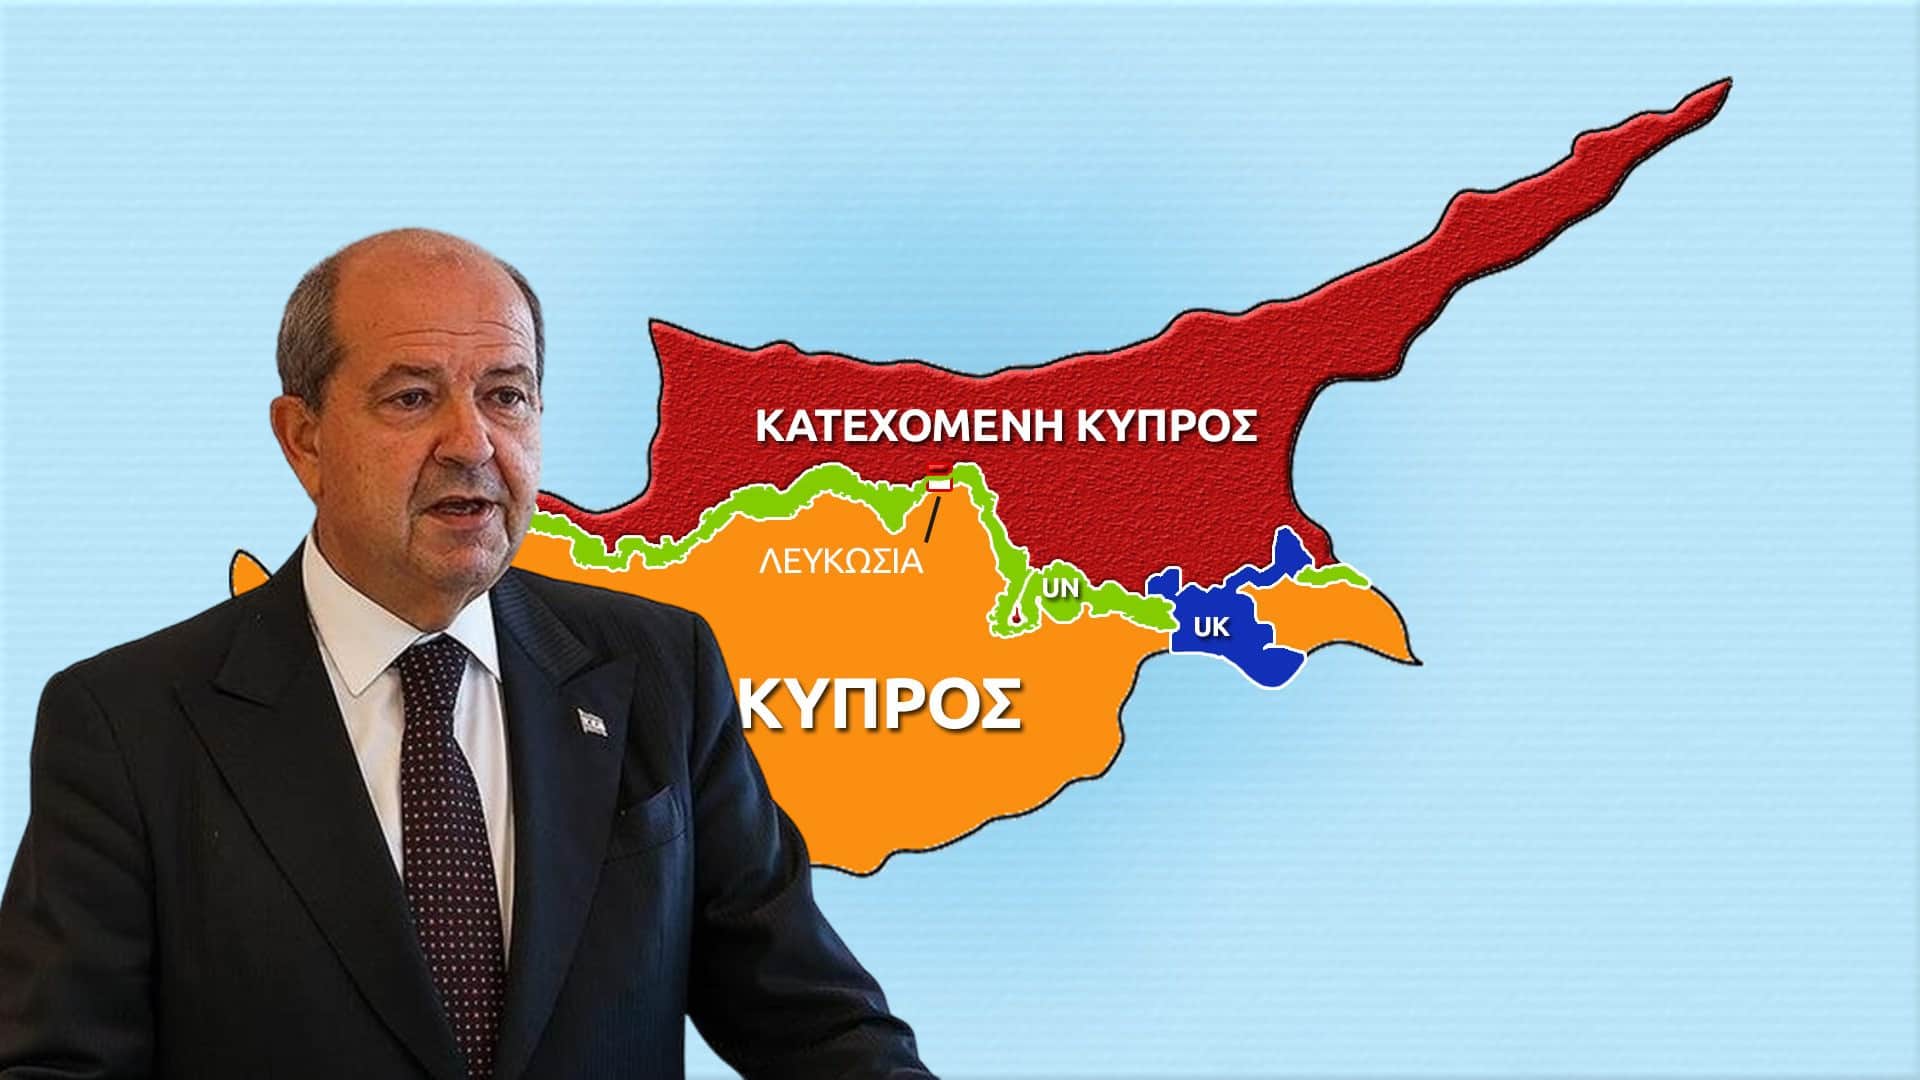 Παράξενη ανακοίνωση από Ε. Τατάρ λίγο πριν την δήλωση του Χ. Συλιανίδη για την "μισή τουρκική Κύπρο"